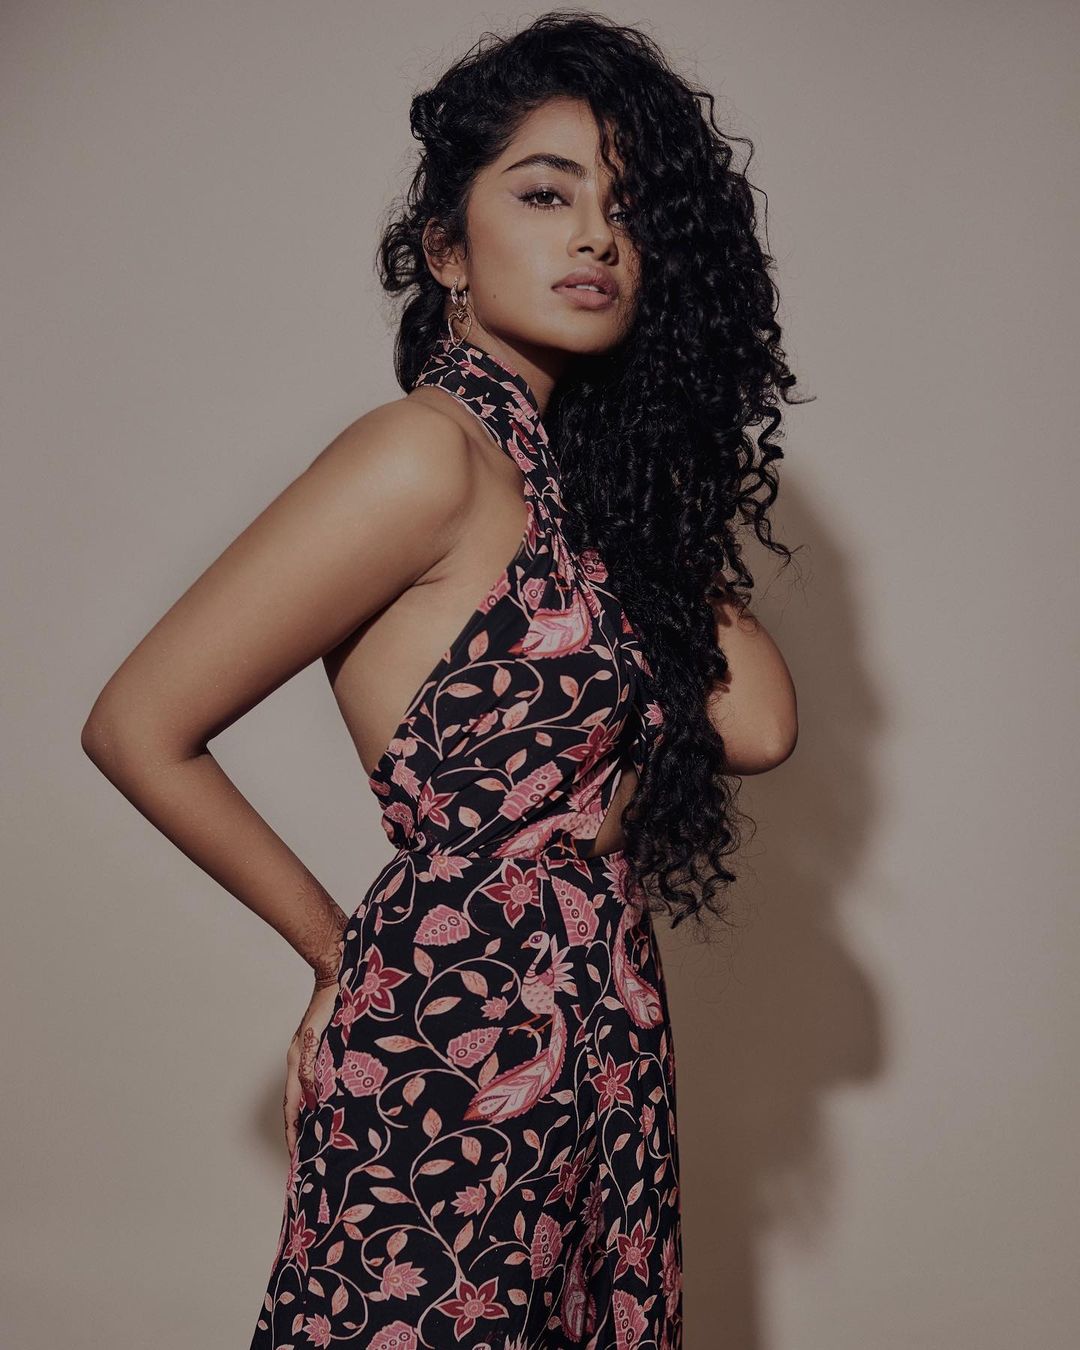 Actress Anupama Parameswaran Poses In A Hot Sexy Backless Dress 1